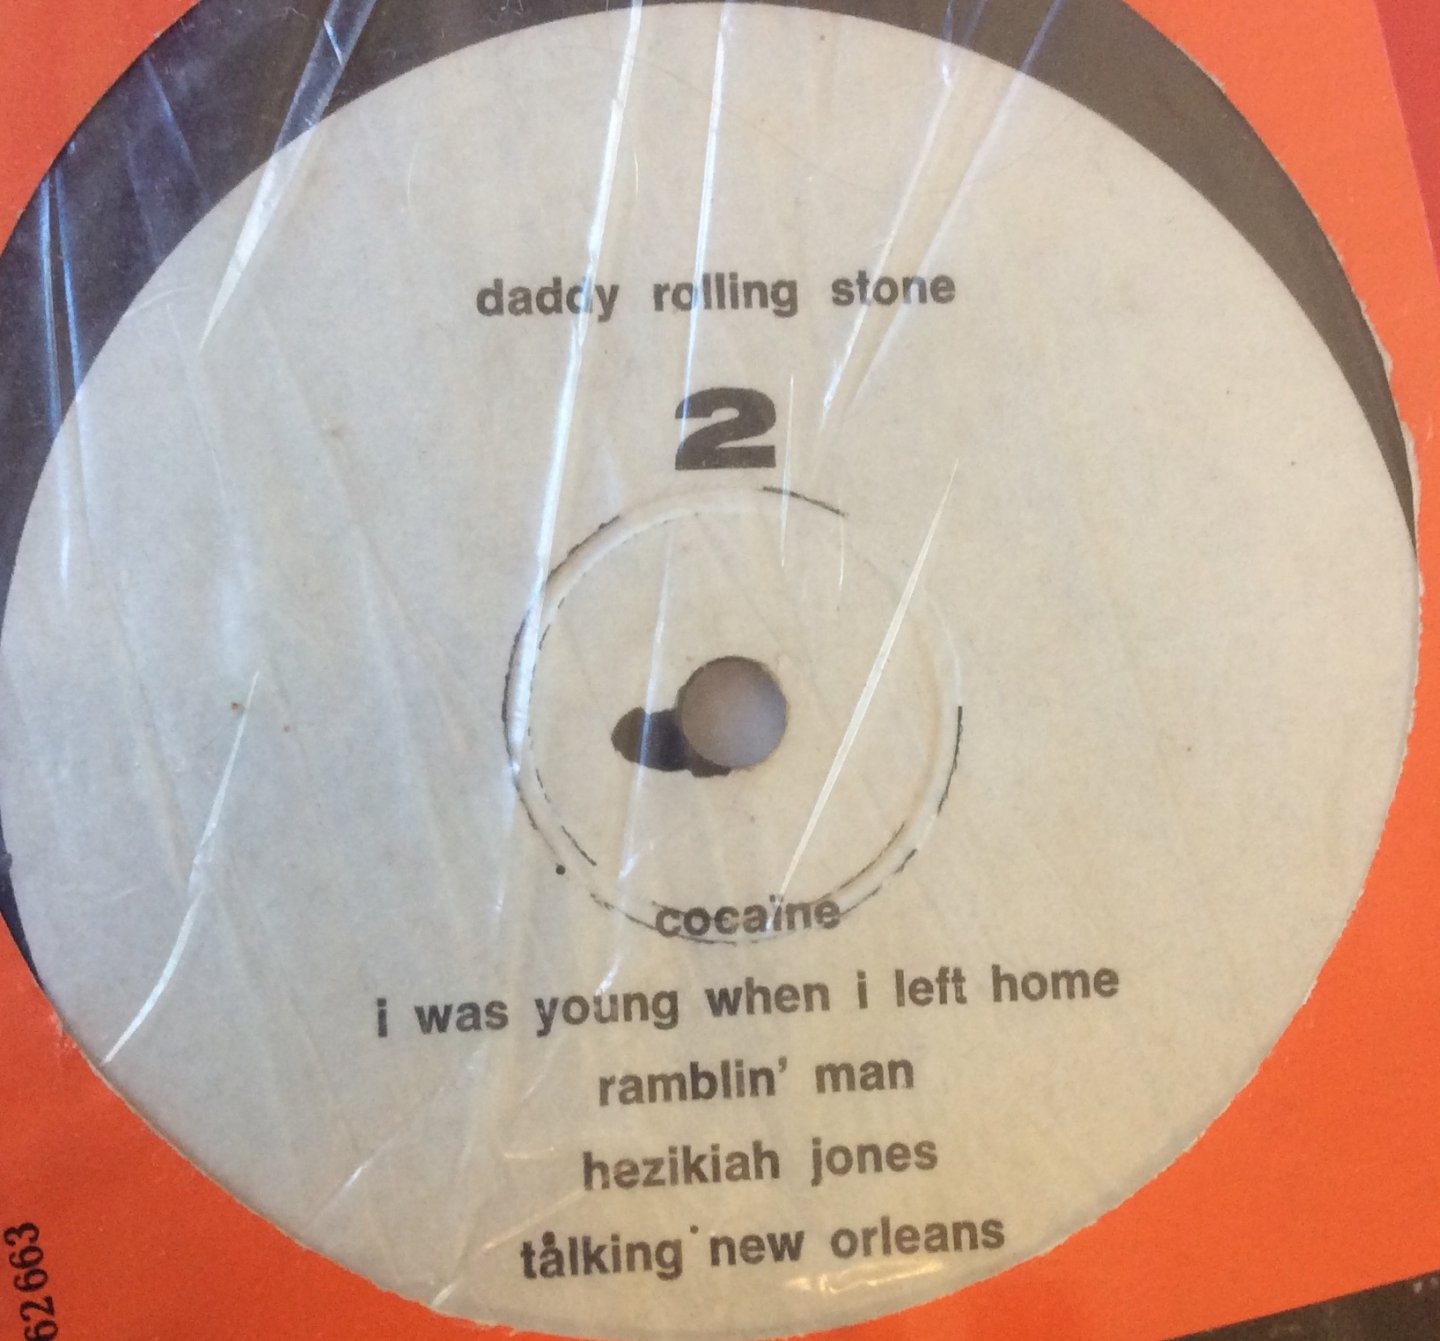 Bob Dylan - Daddy Rolling Stone Bootleg